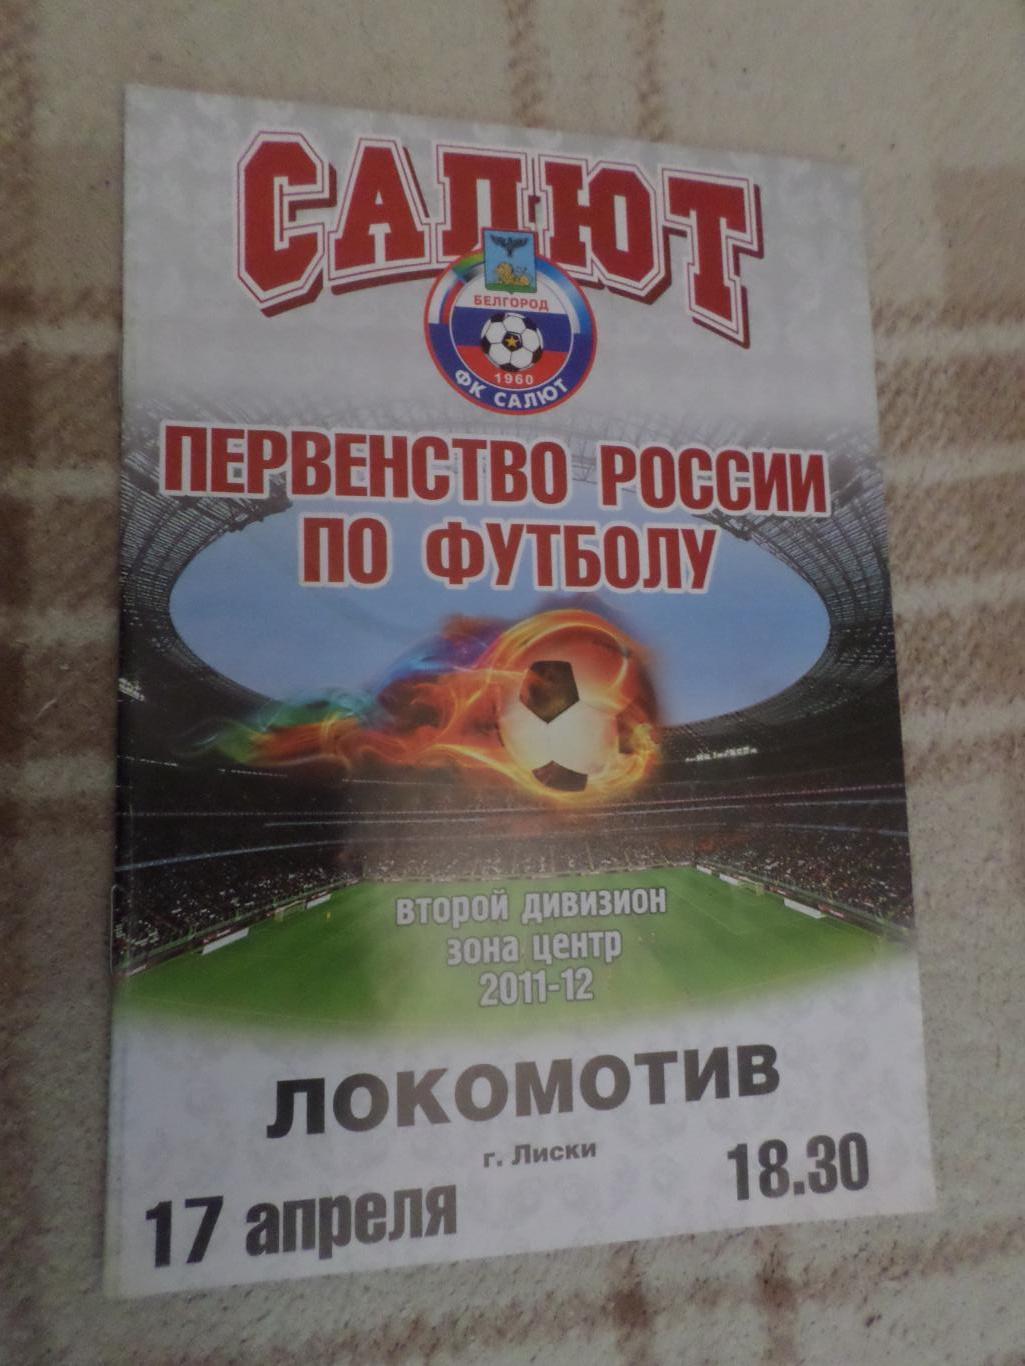 программа Салют Белгород - Локомотив Лиски 2011-2012